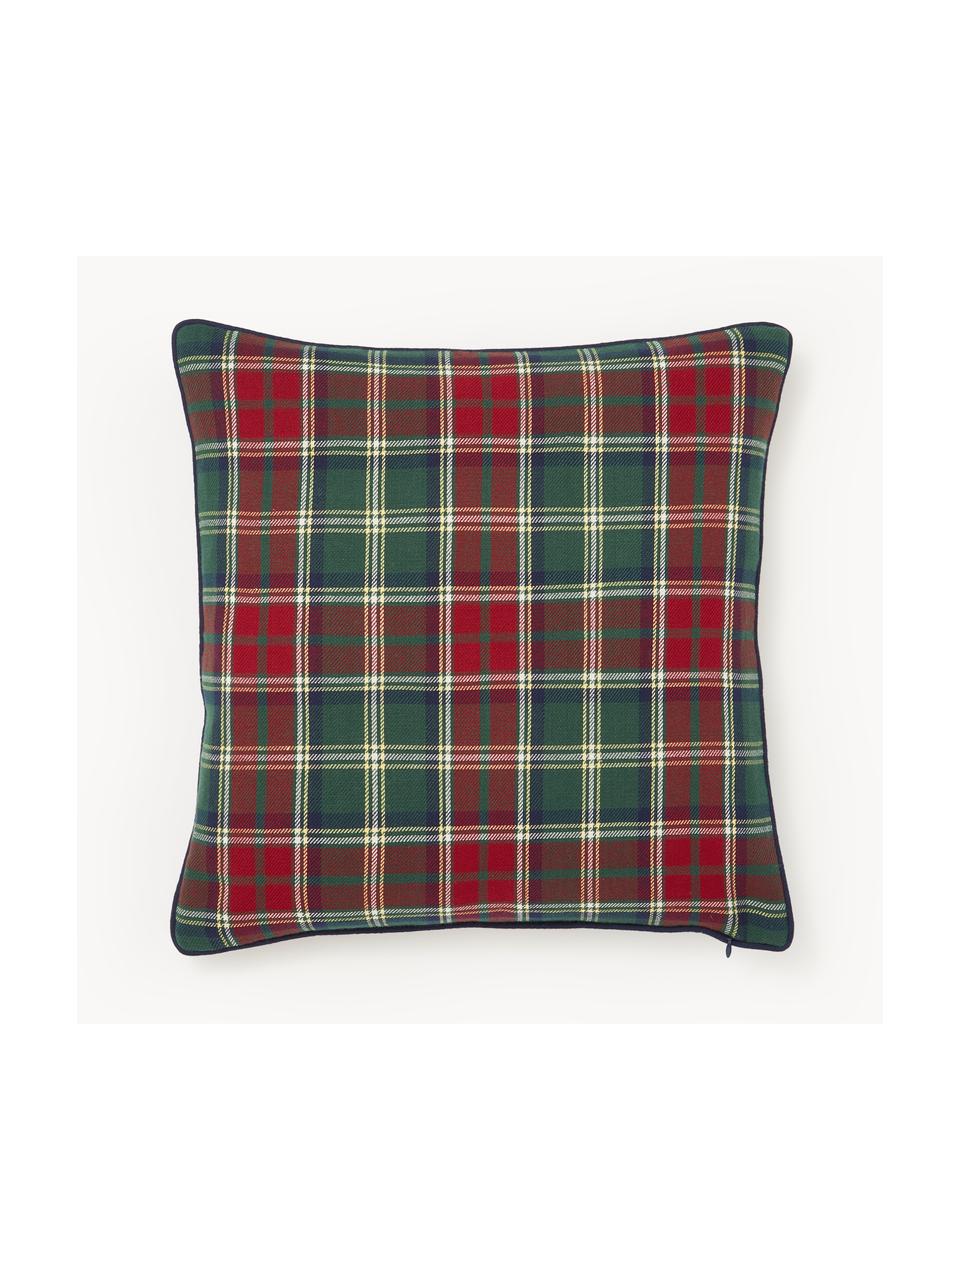 Károvaný bavlněný povlak na polštář Stirling, 100 % bavlna, Červená, tmavě zelená, Š 45 cm, D 45 cm